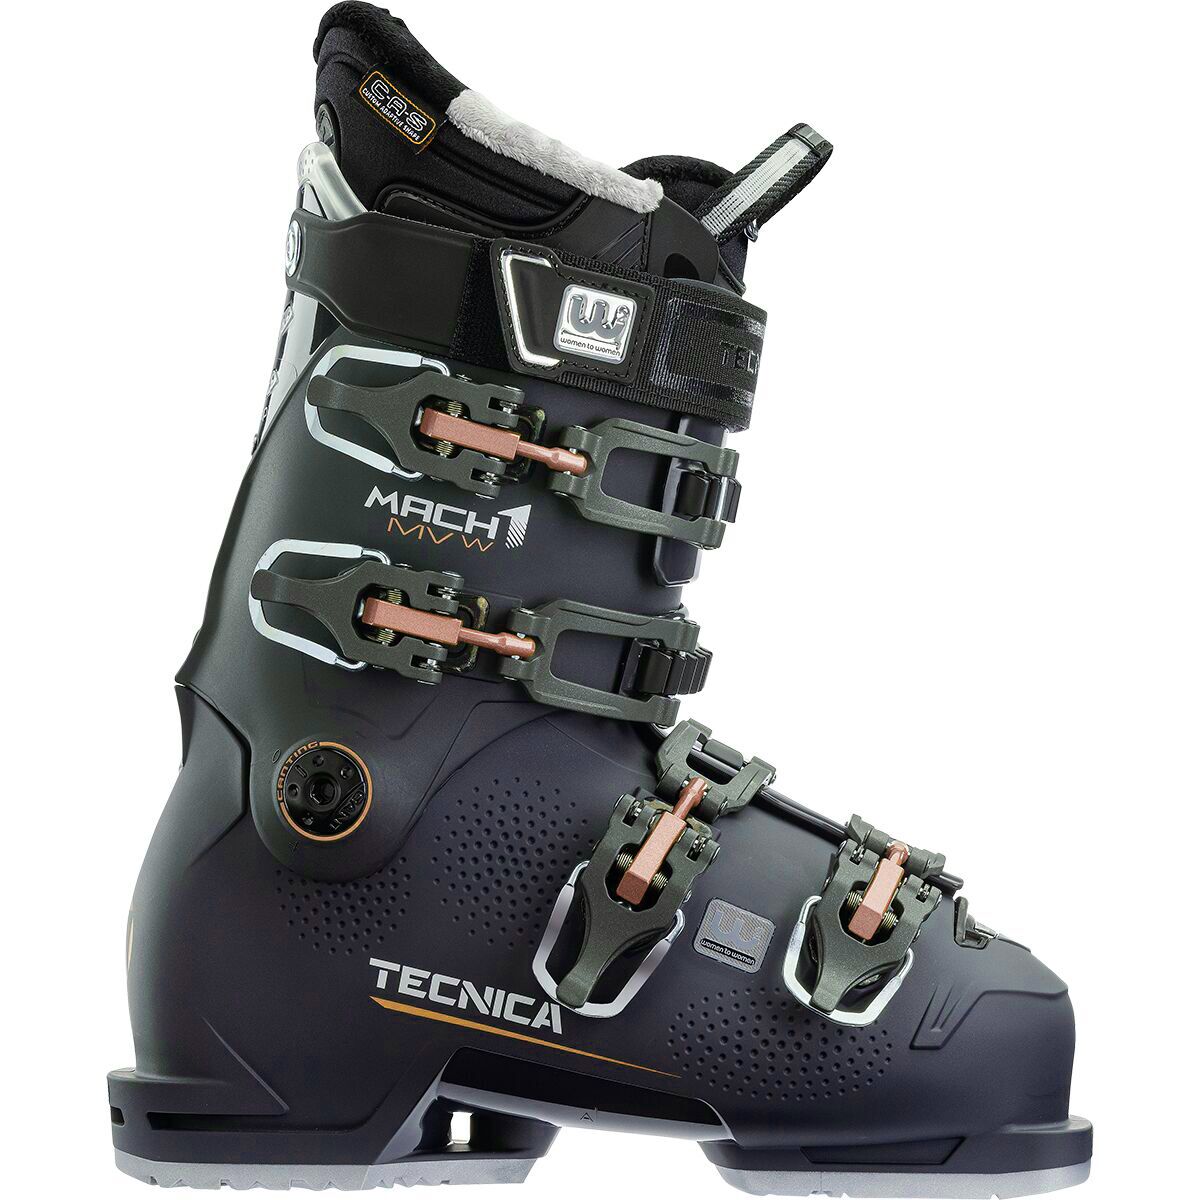 Tecnica Mach1 MV 95 Ski Boot - 2022 - Women's